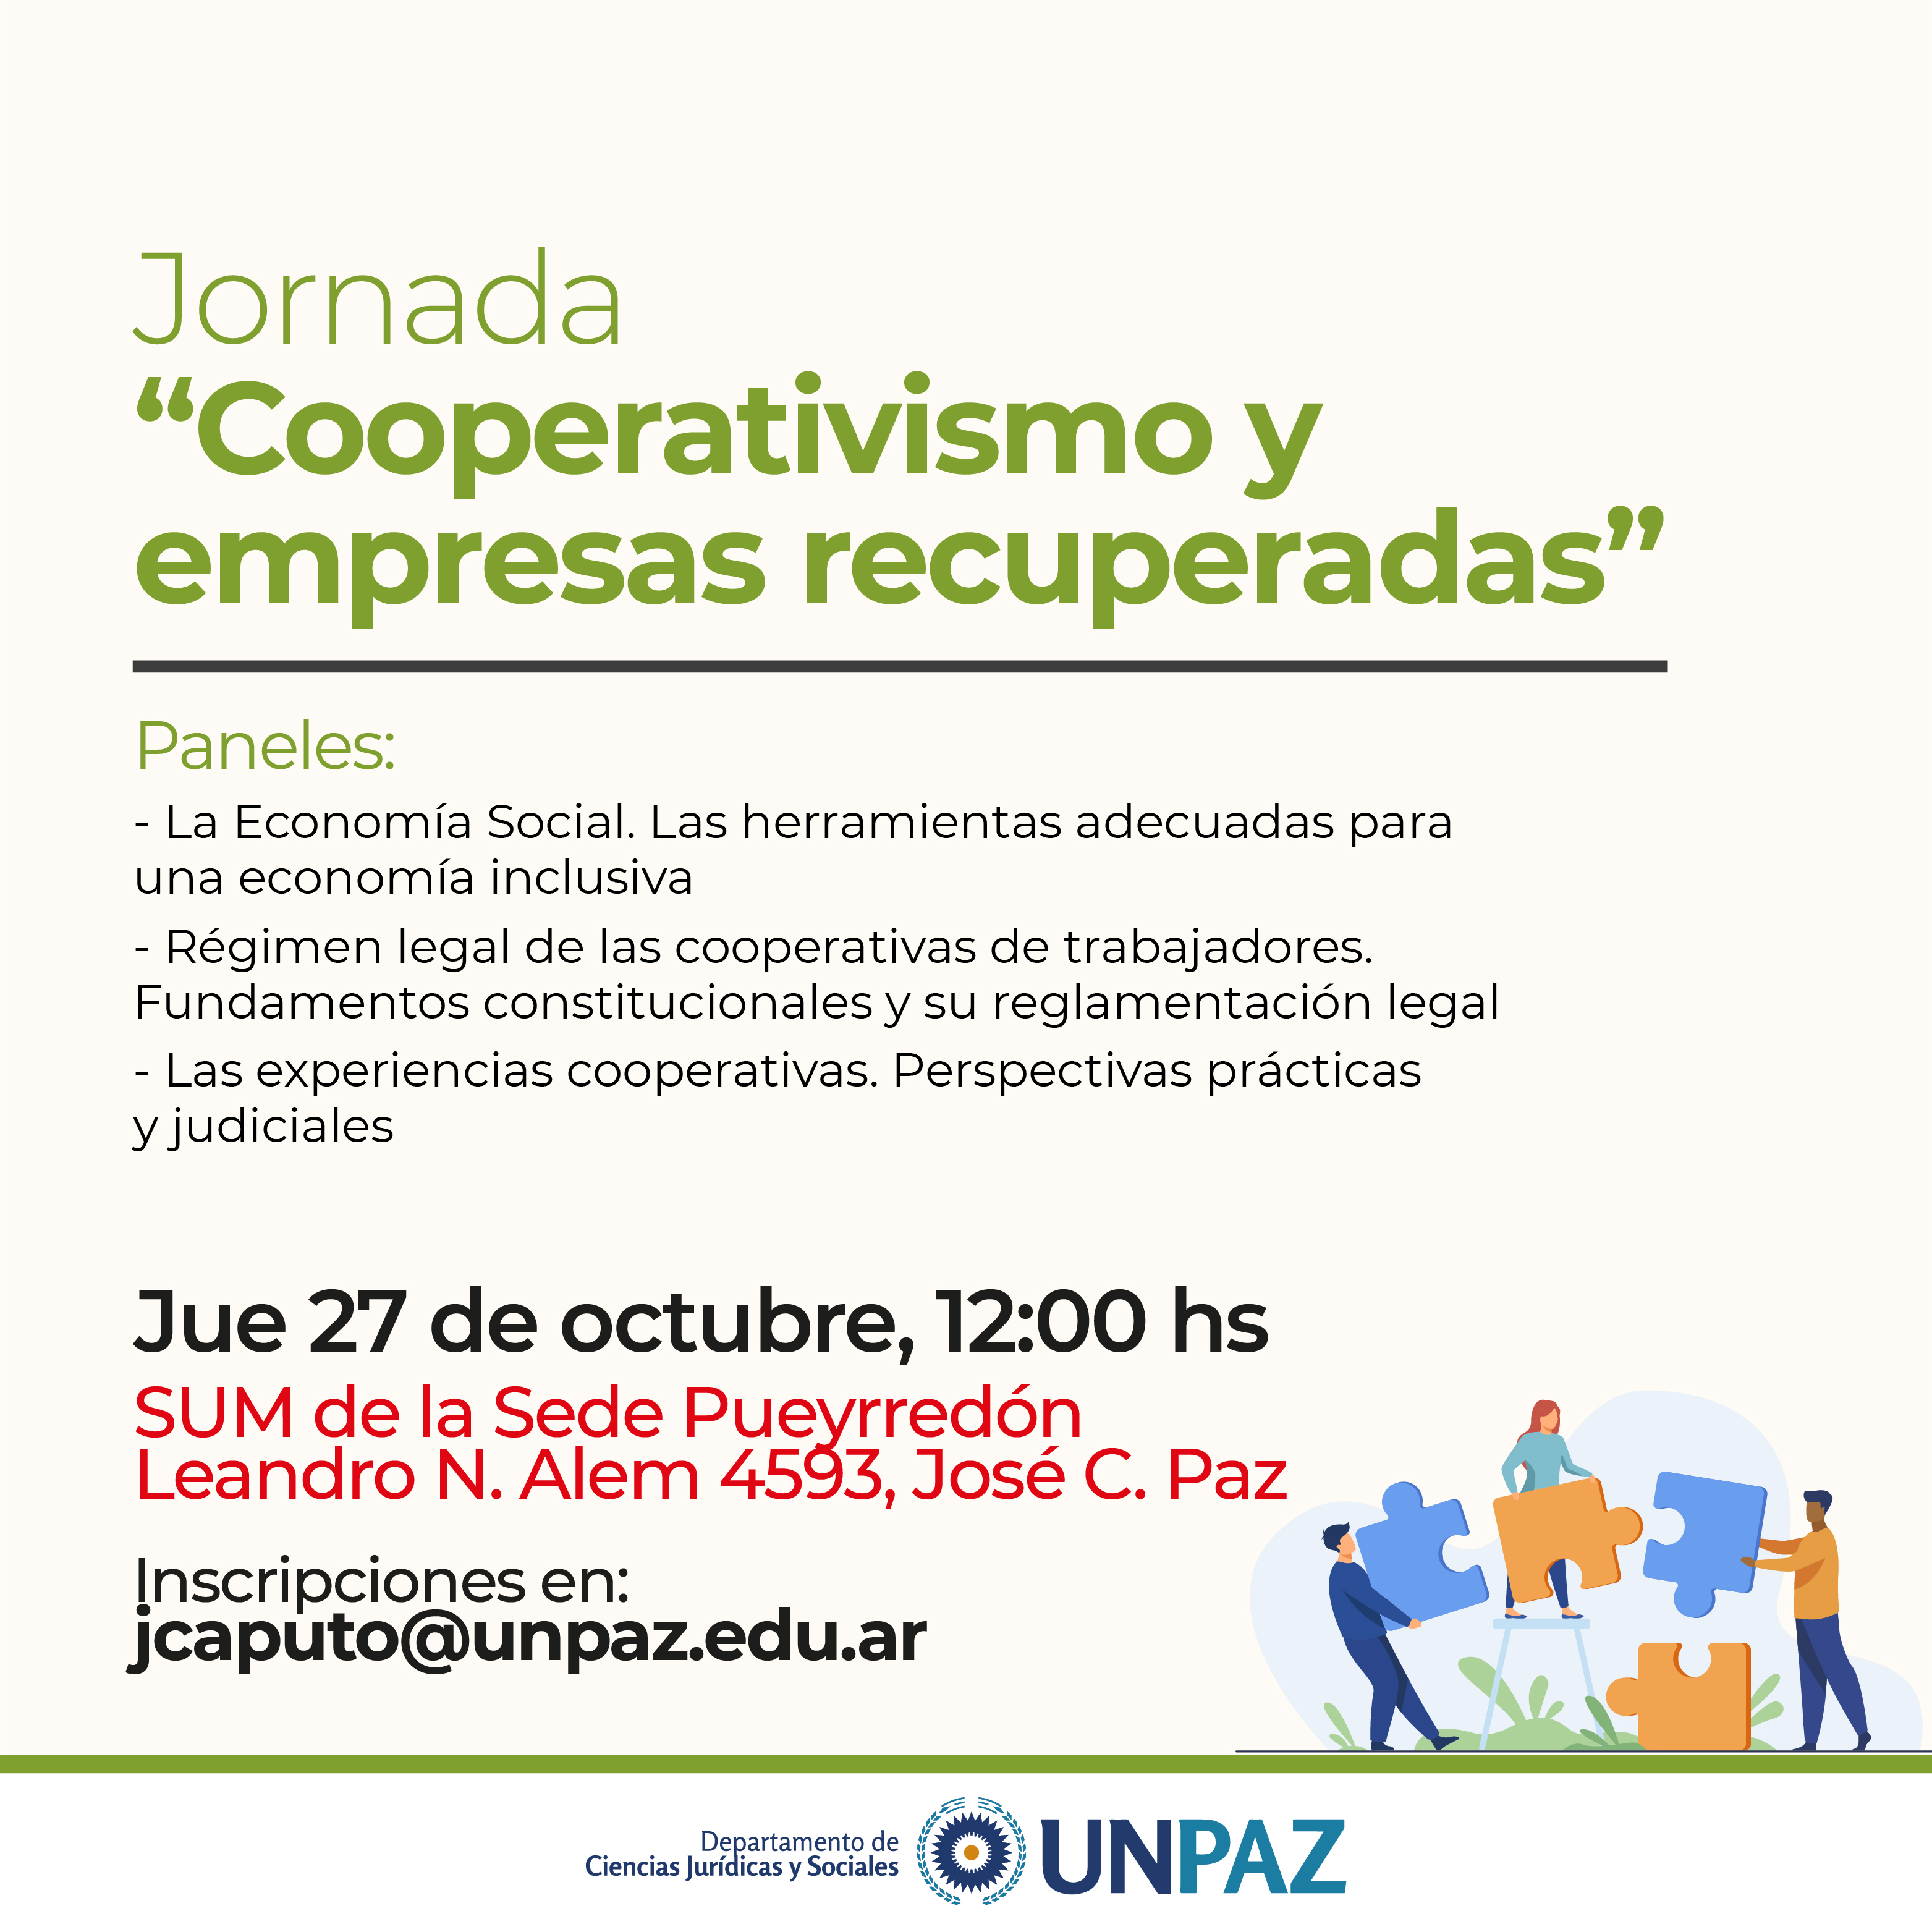 Se realizará la Jornada “Cooperativismo y empresas recuperadas” en la UNPAZ